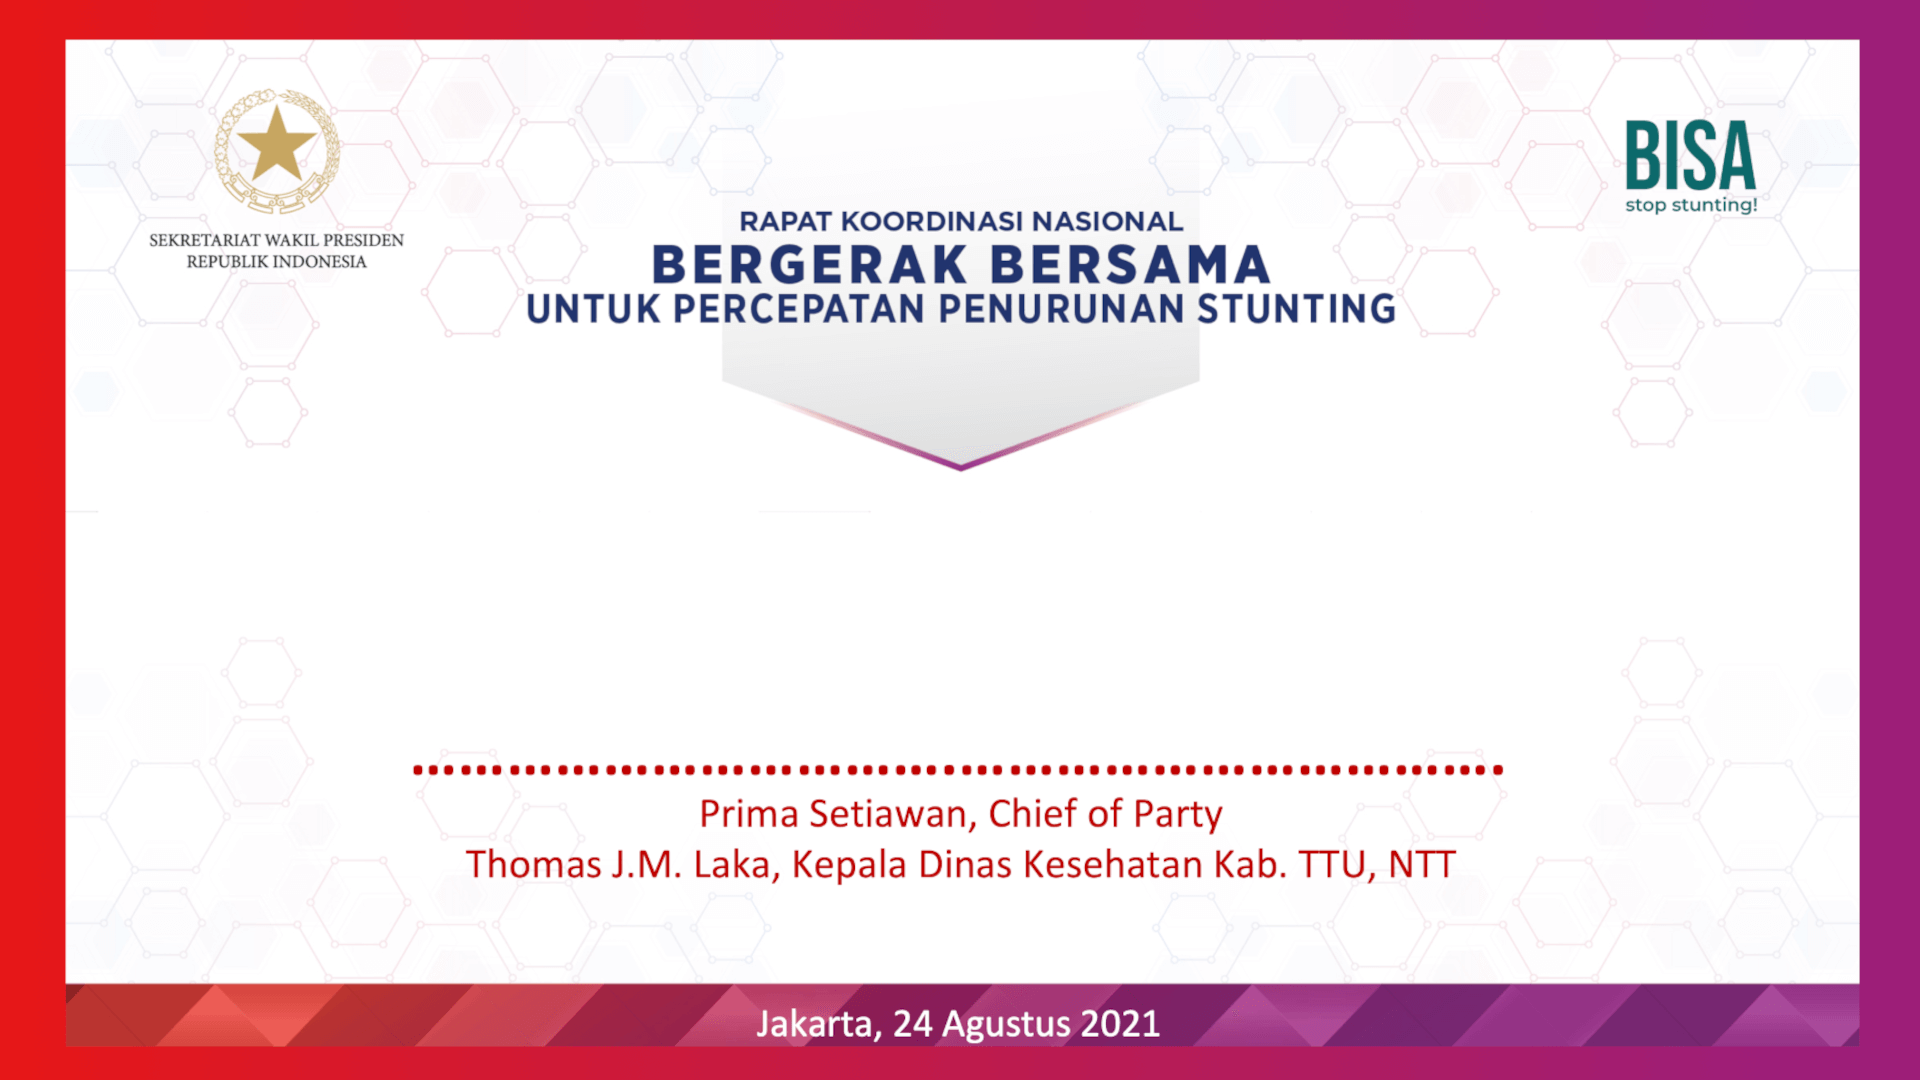 Prima Setiawan, Chief of Party Thomas J.M. Laka, Kepala Dinas Kesehatan Kab. TTU, NTT